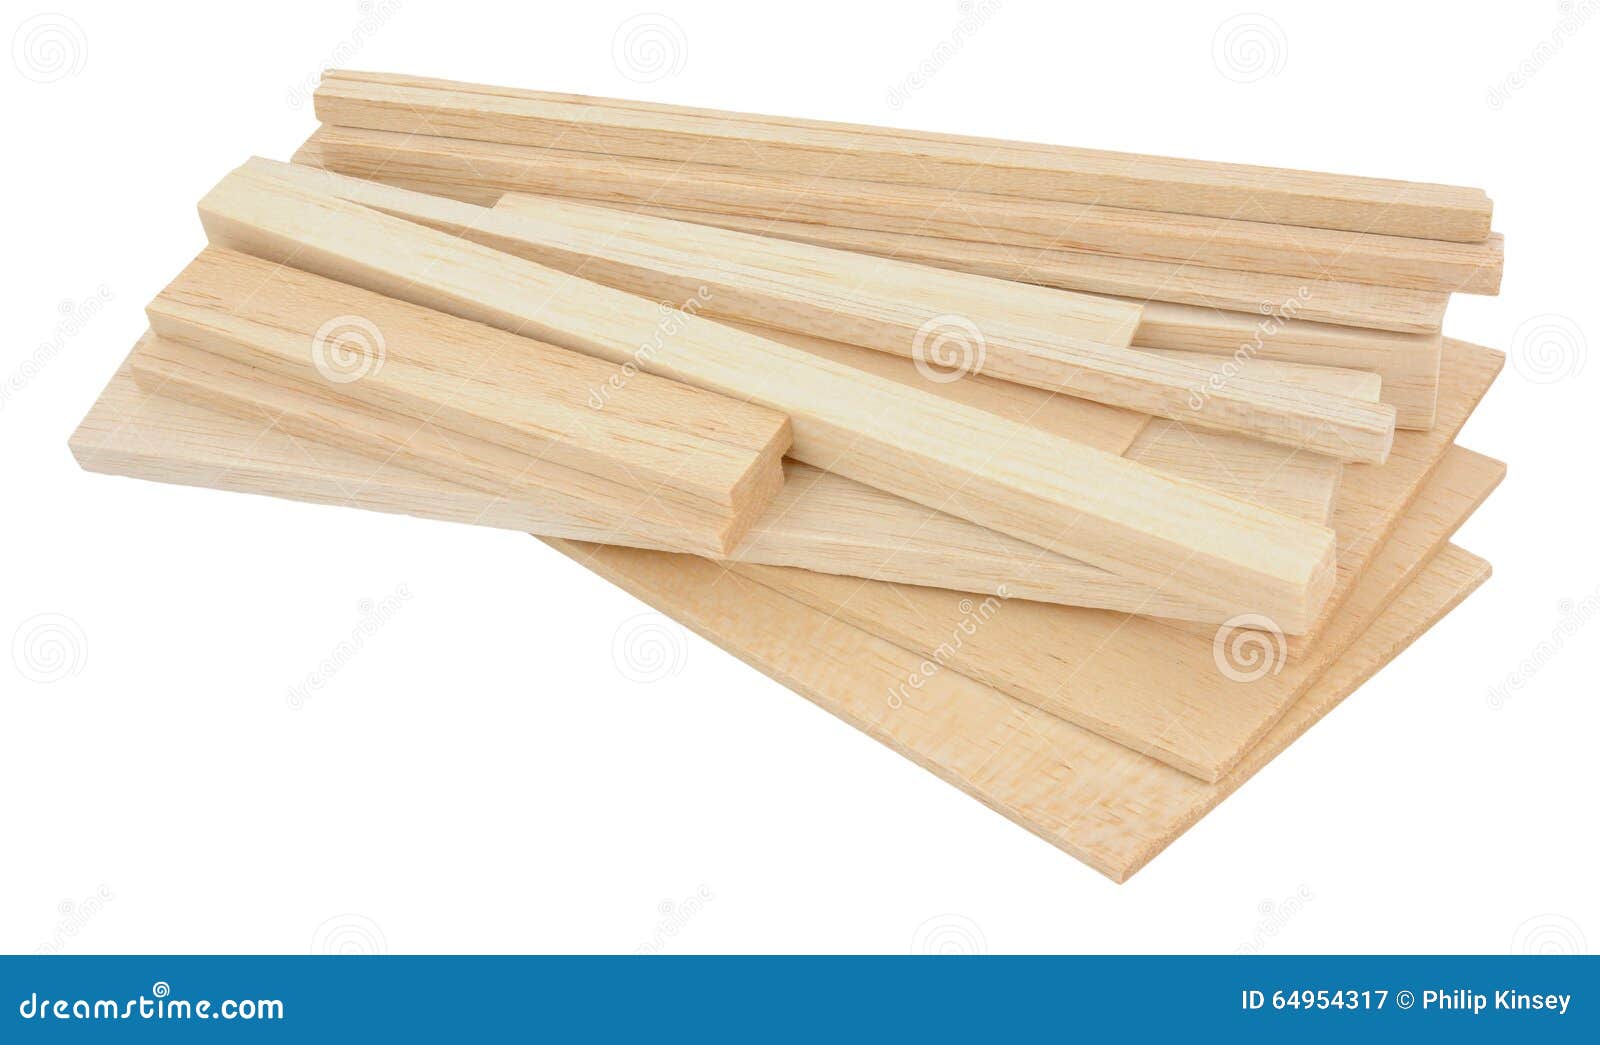 balsa wood samples